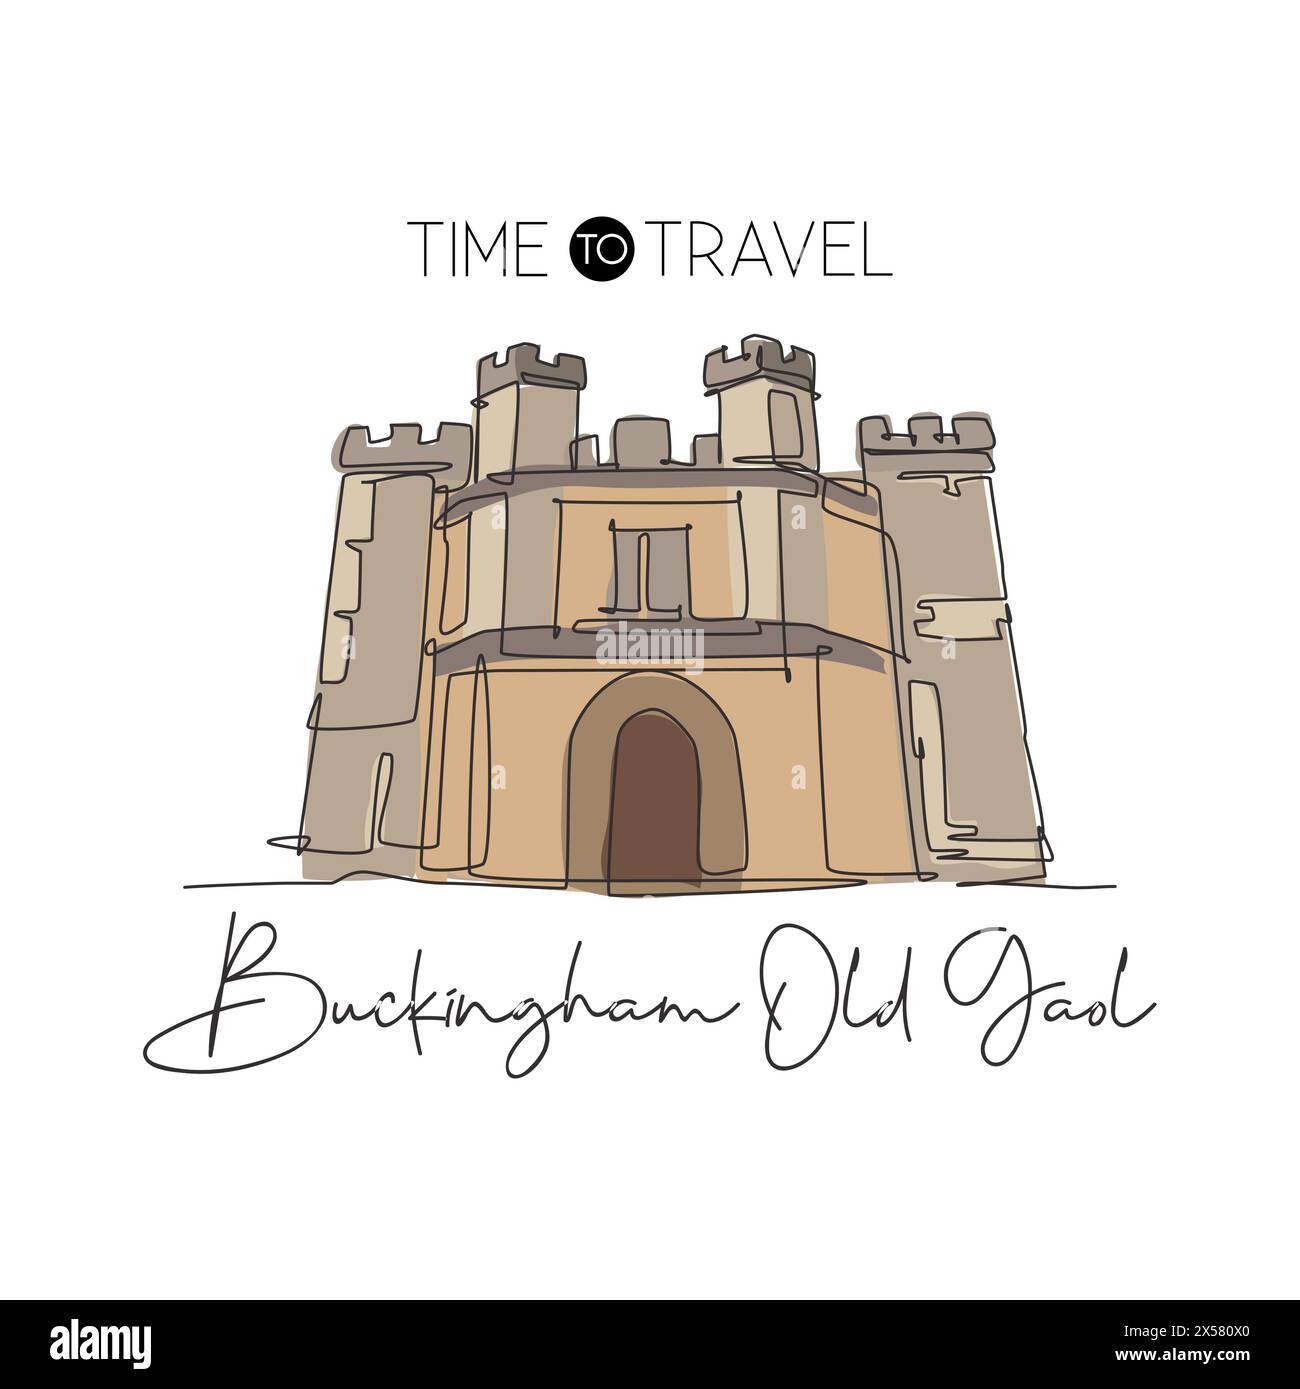 Linea continua singola che disegna Buckingham Old Gaol. Famoso museo nel Buckinghamshire, Inghilterra. Arredamento per la casa da viaggio in tutto il mondo, arte da parete, stampa di poster. Illustrazione Vettoriale